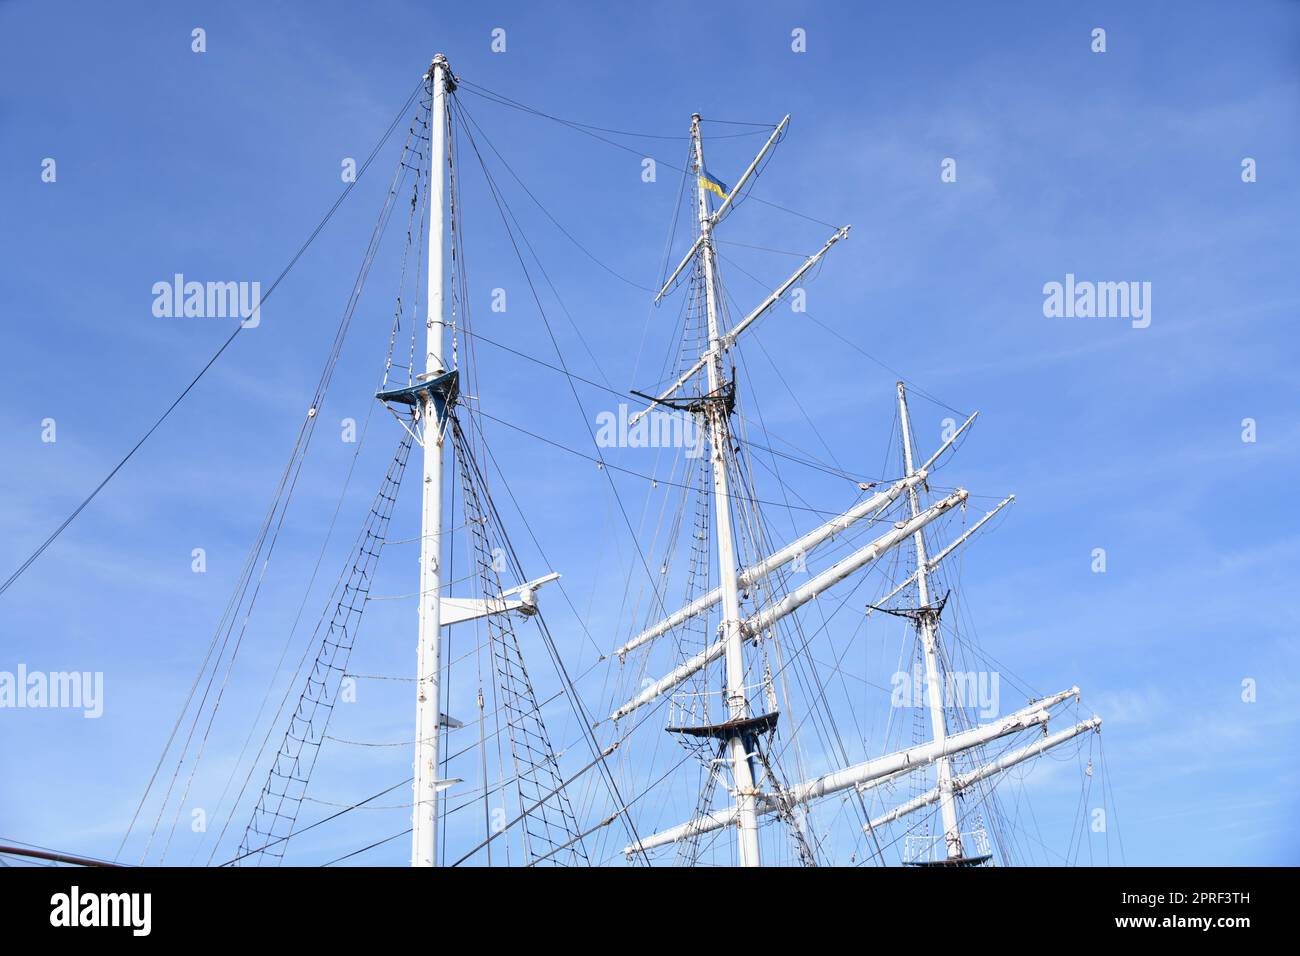 Un voilier avec trois mâts est un grand navire. Les trois maîtres sont souvent utilisés comme navire de formation ou à des fins touristiques. Banque D'Images